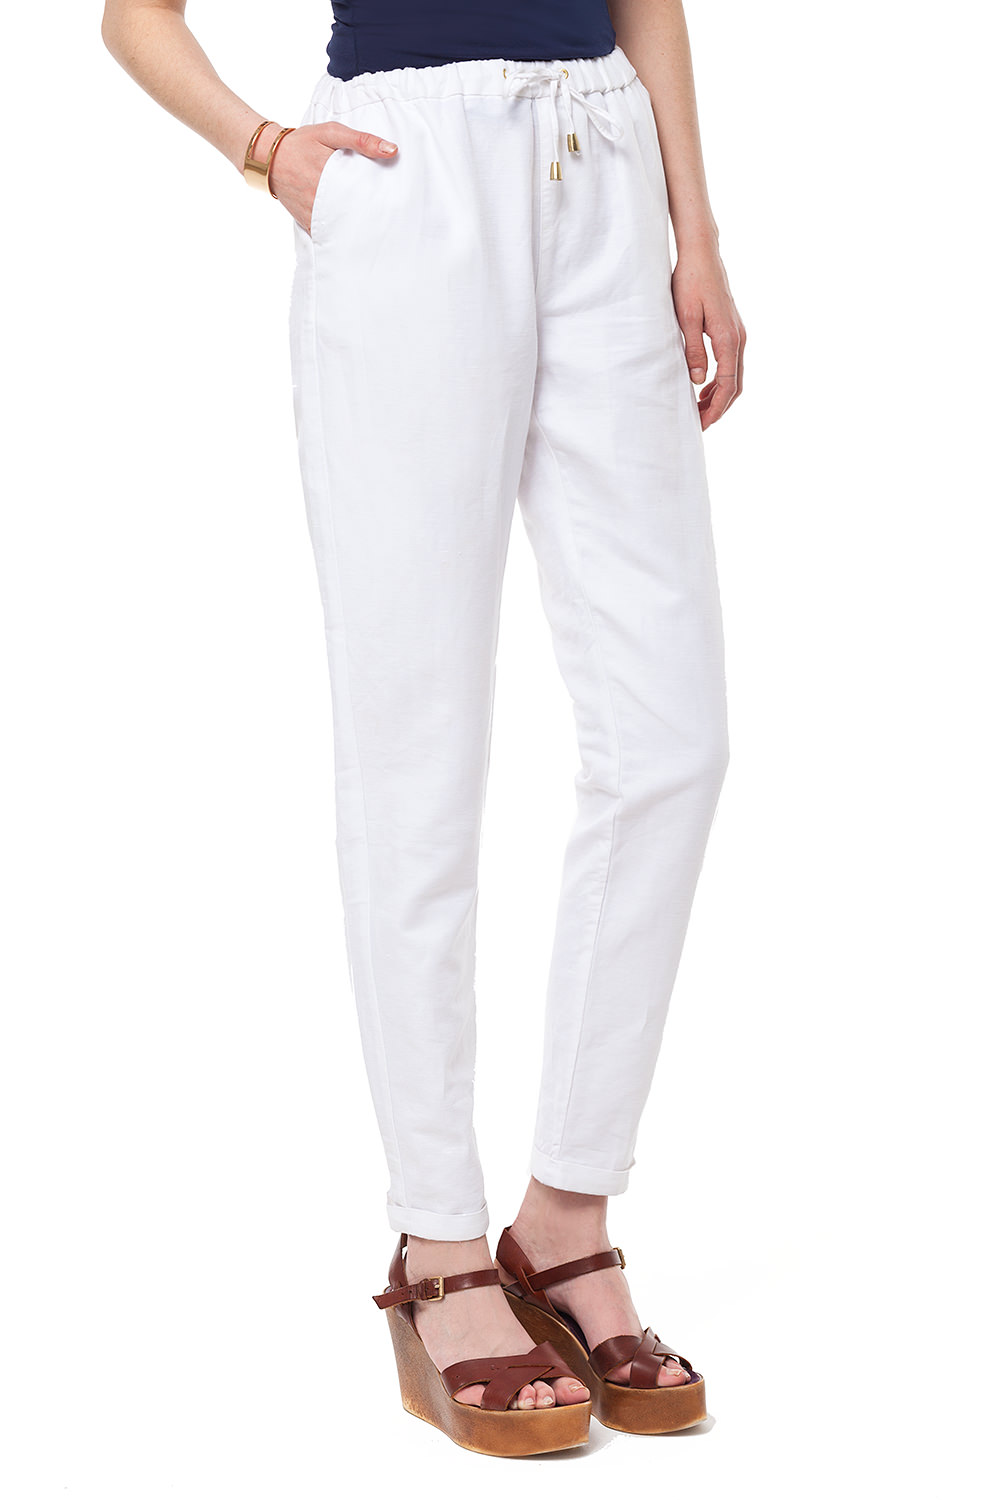 Фото товара 8991, белые льняные брюки